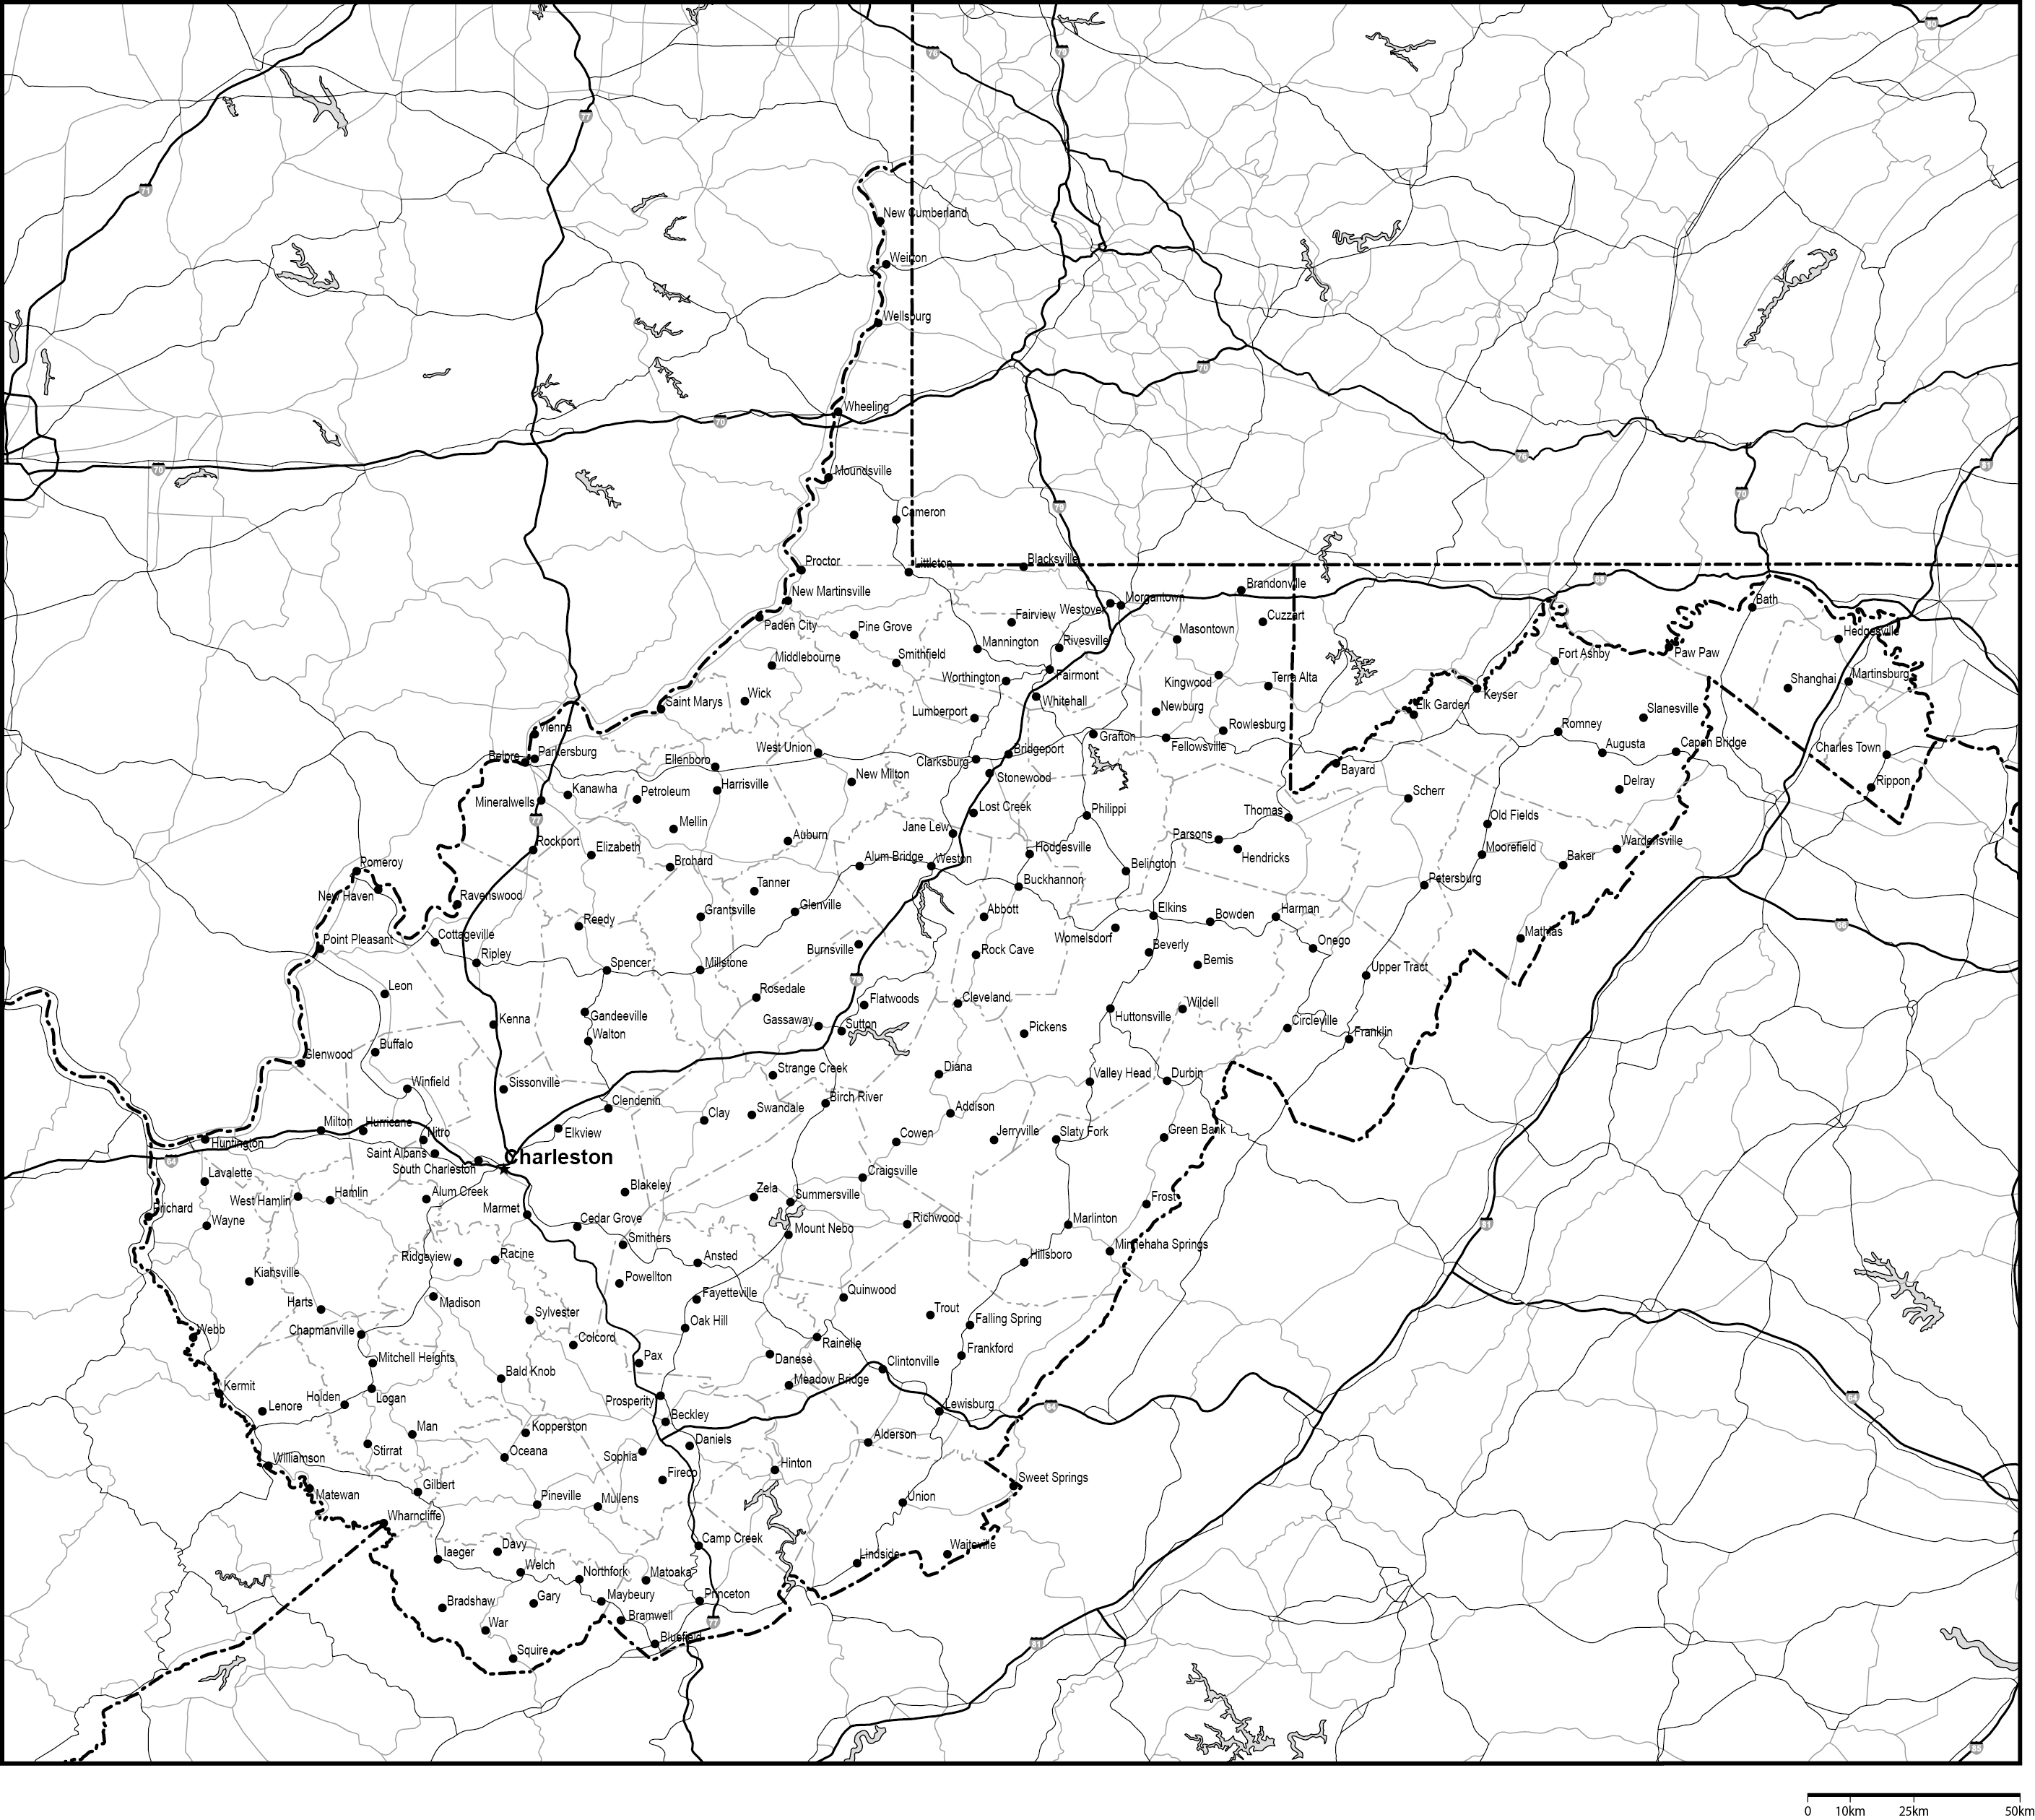 ウェストバージニア州郡分け白地図州都・主な都市・道路あり(英語)フリーデータの画像